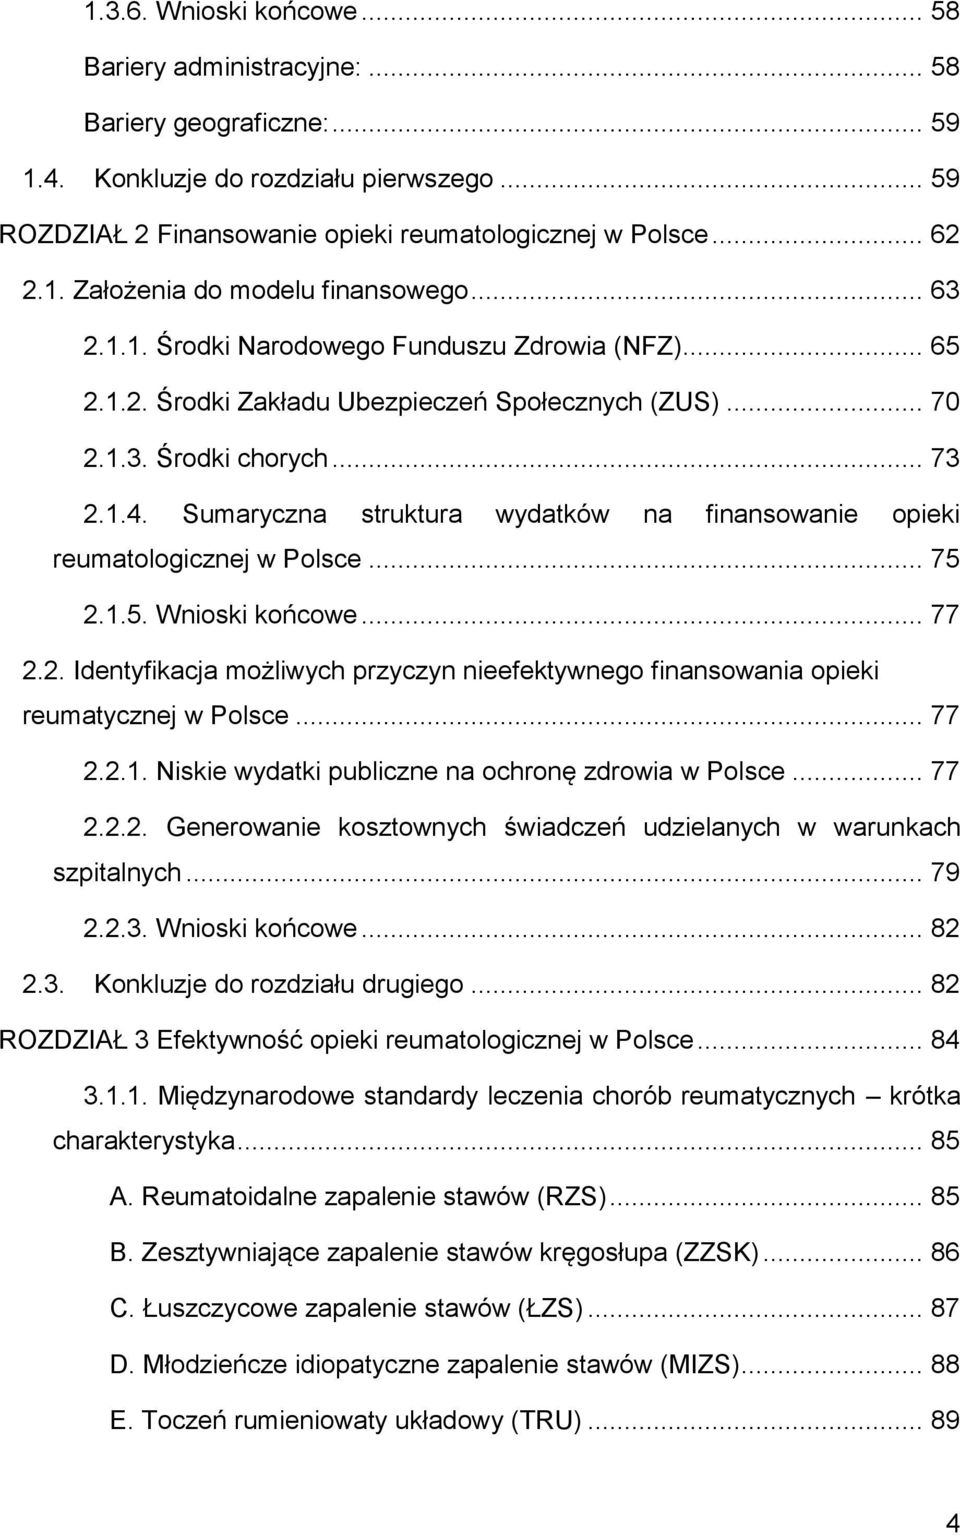 Sumaryczna struktura wydatków na finansowanie opieki reumatologicznej w Polsce... 75 2.1.5. Wnioski końcowe... 77 2.2. Identyfikacja możliwych przyczyn nieefektywnego finansowania opieki reumatycznej w Polsce.